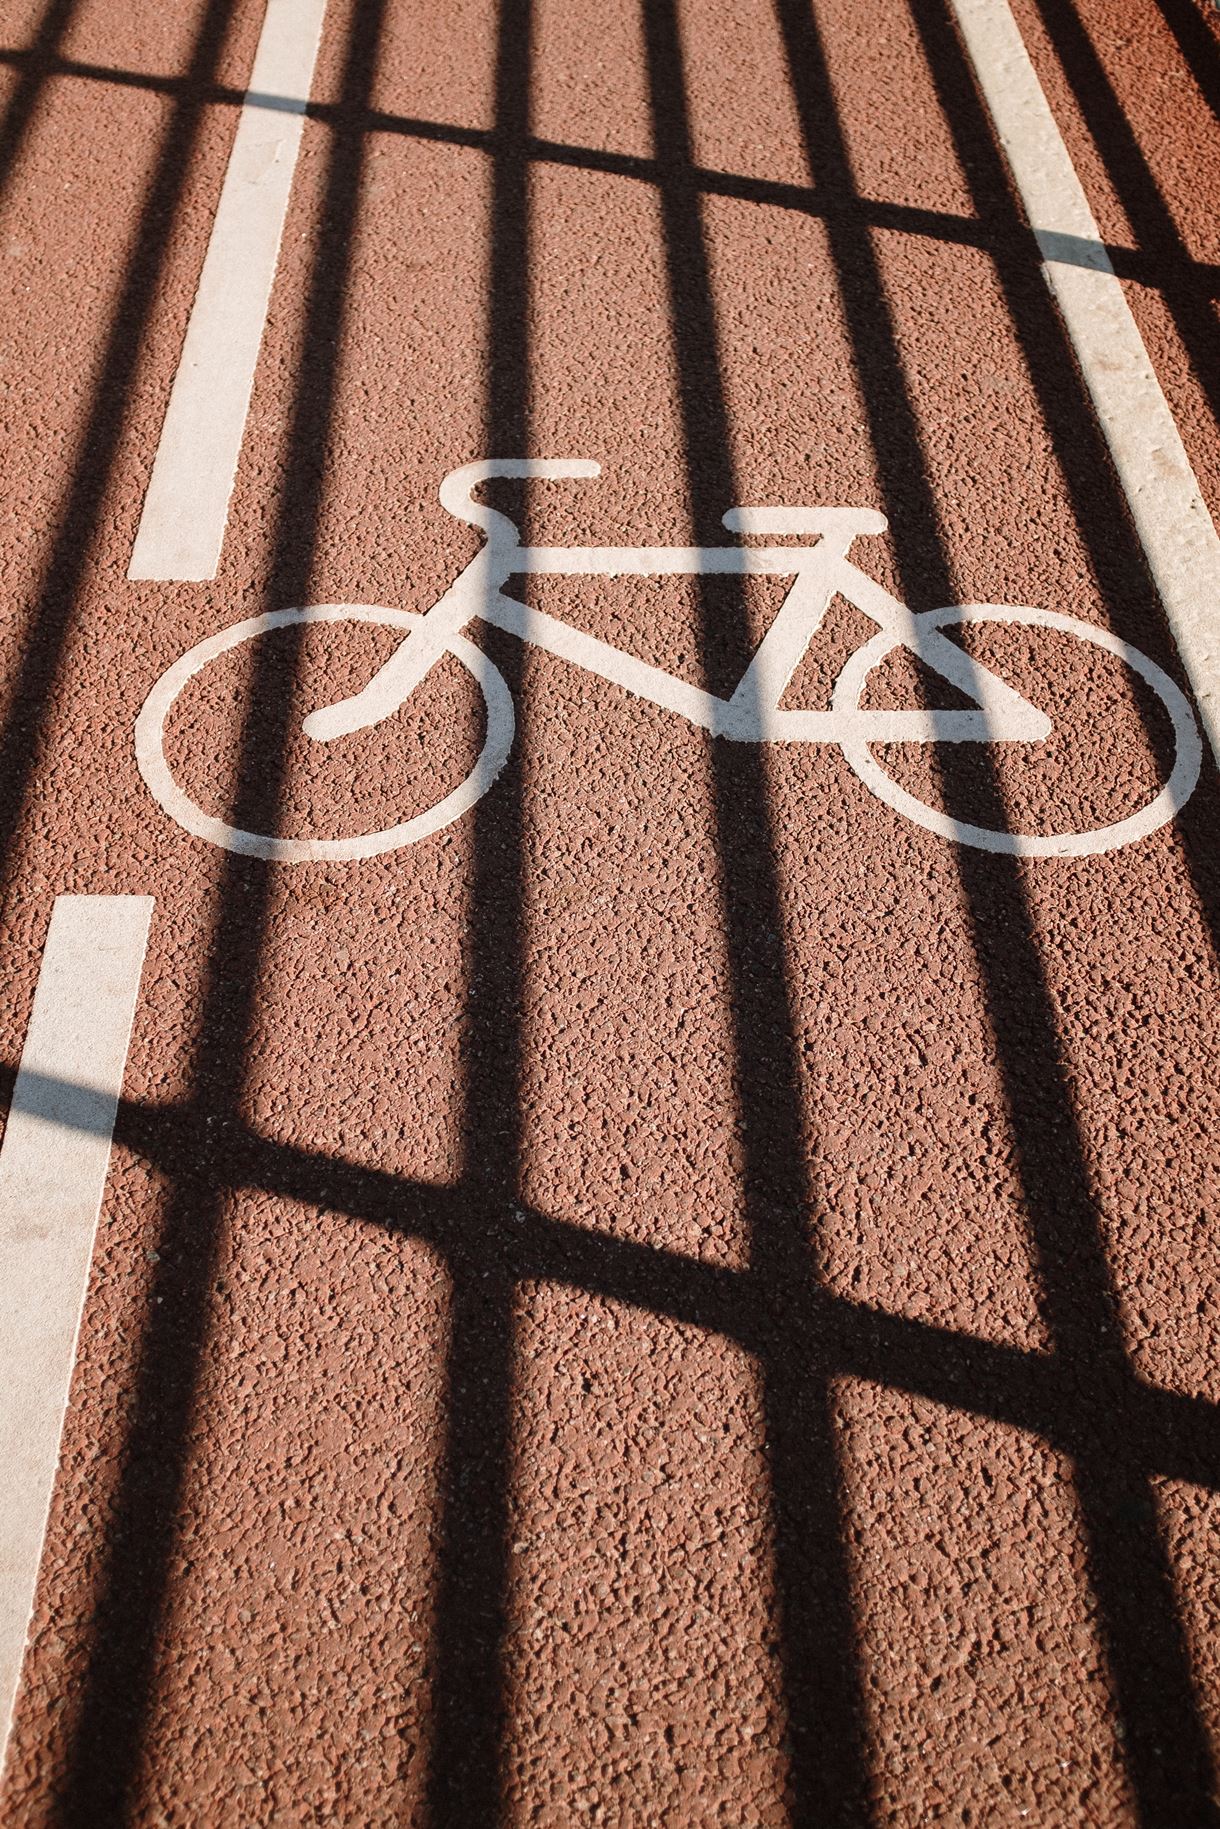 Cycle path